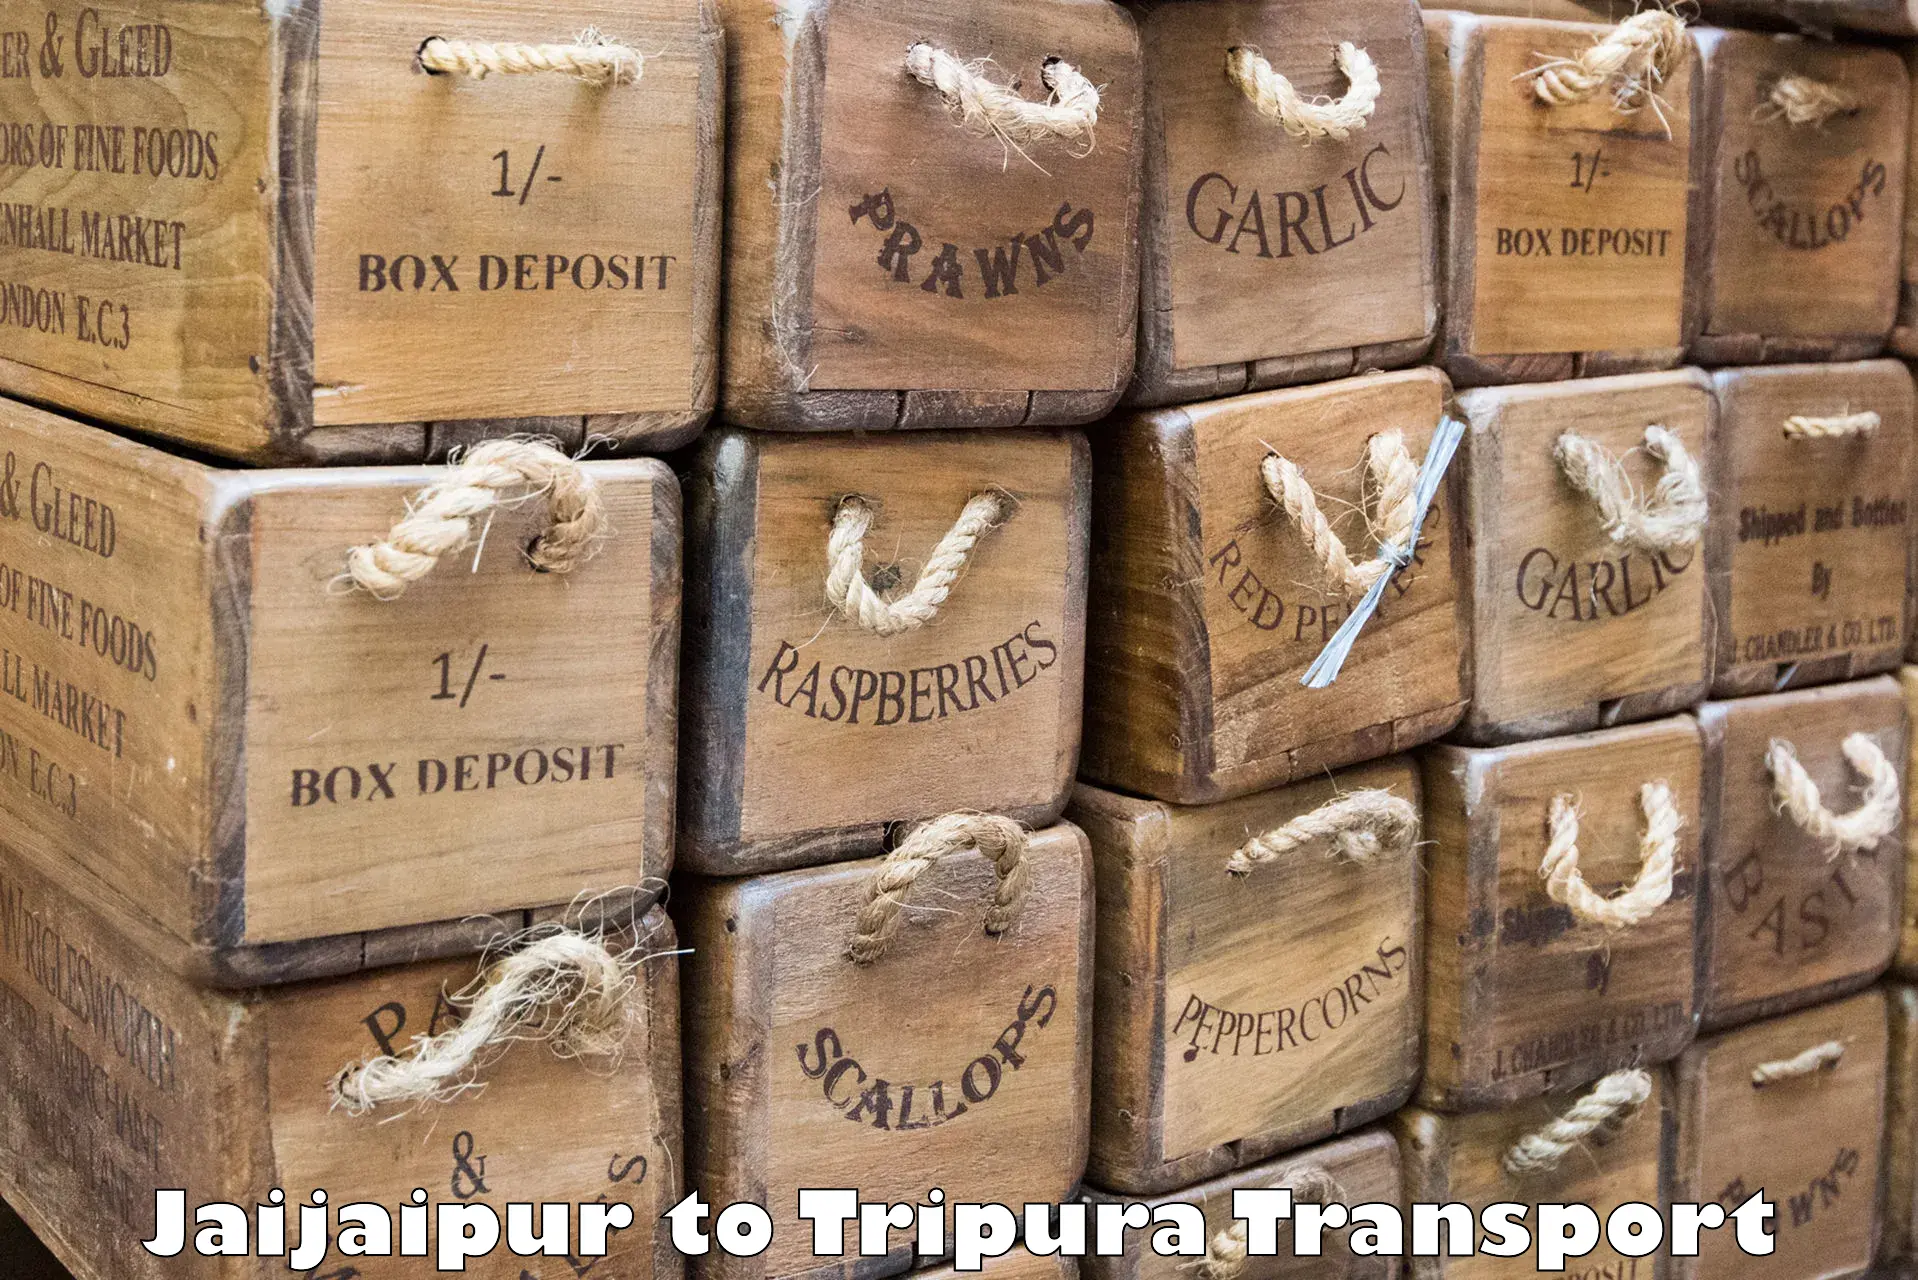 Lorry transport service Jaijaipur to Agartala